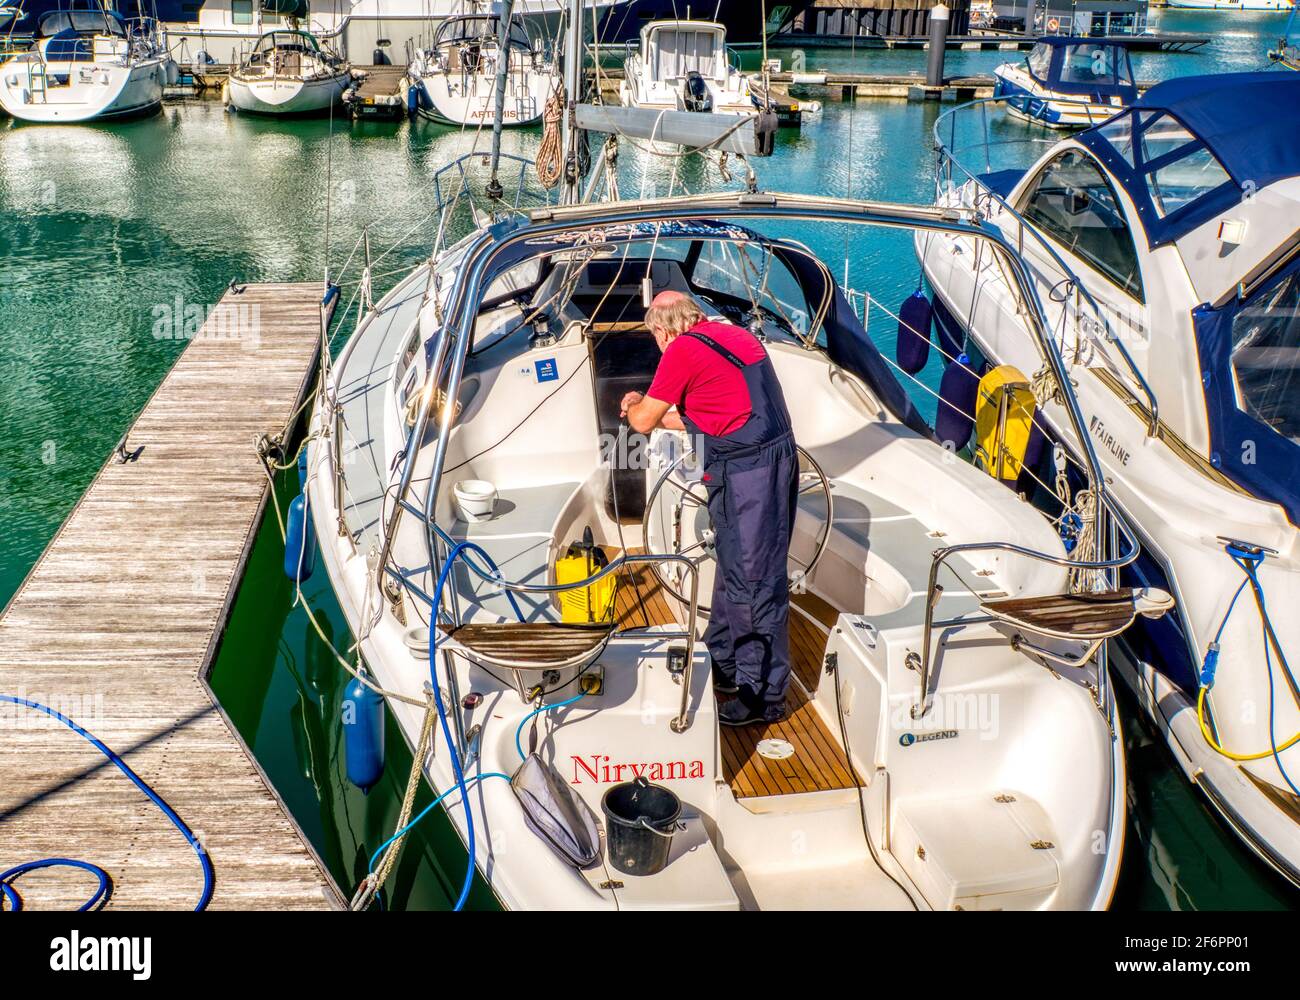 Jet washing eine Yacht in Vorbereitung auf die Segel, Ocean Village Marina, Southampton, UK Stockfoto